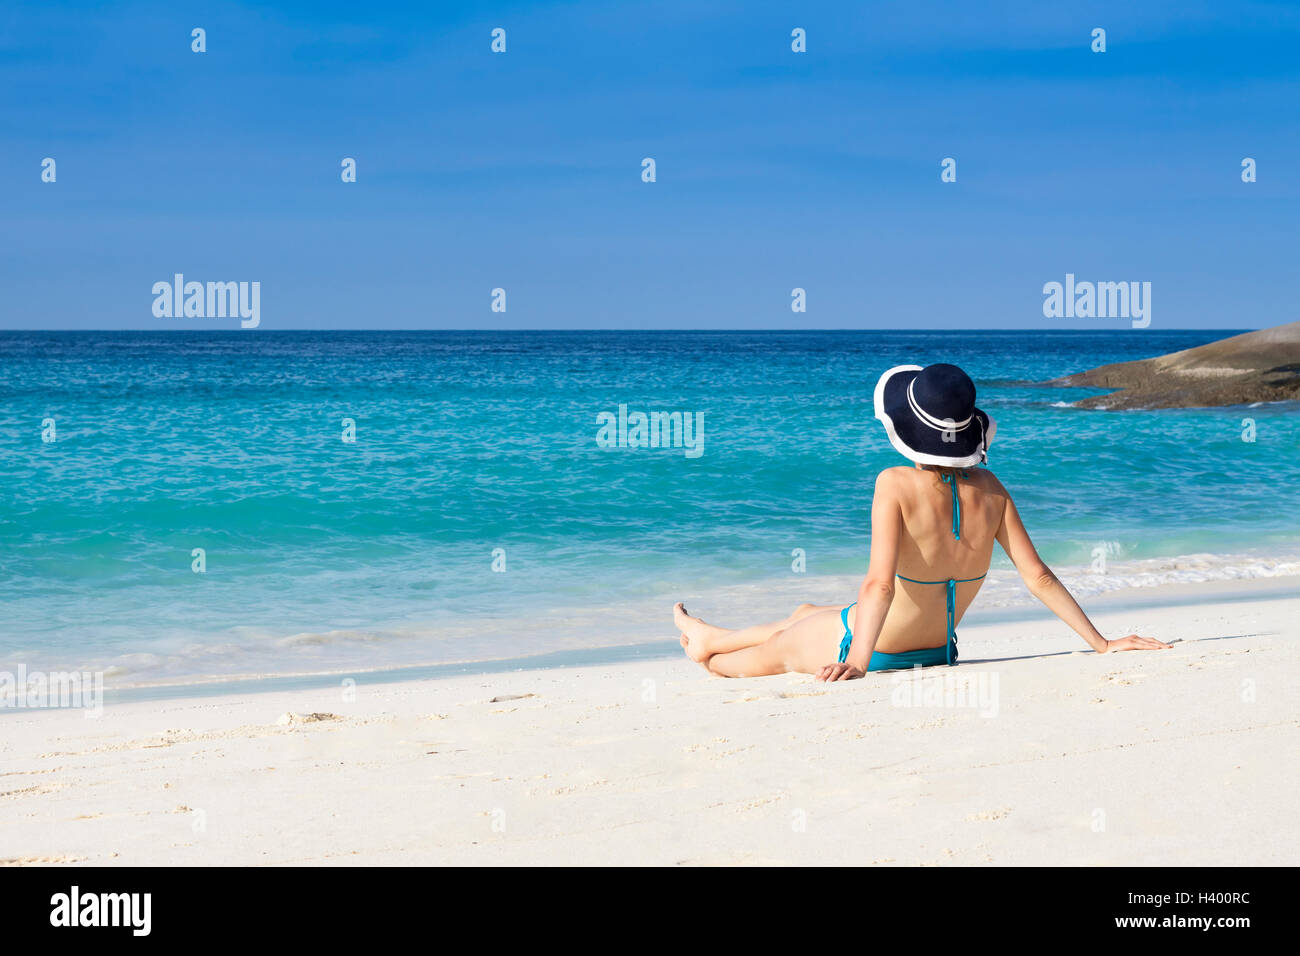 Mujer relajante en la isla del paraíso de playa con arena blanca y mar azul Foto de stock